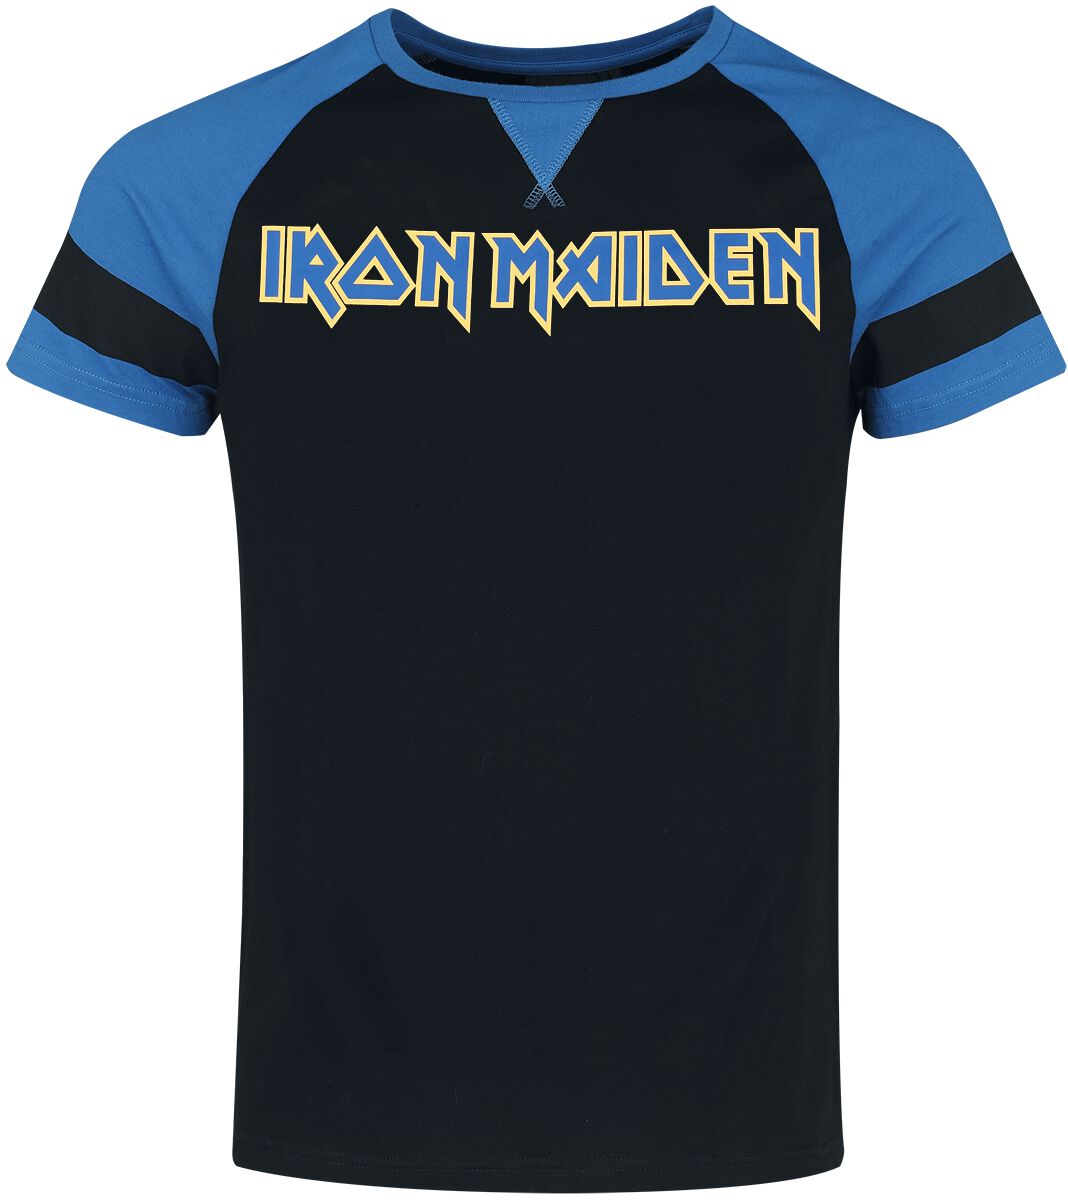 Iron Maiden T-Shirt - S bis XXL - für Männer - Größe XXL - schwarz/blau  - EMP exklusives Merchandise!